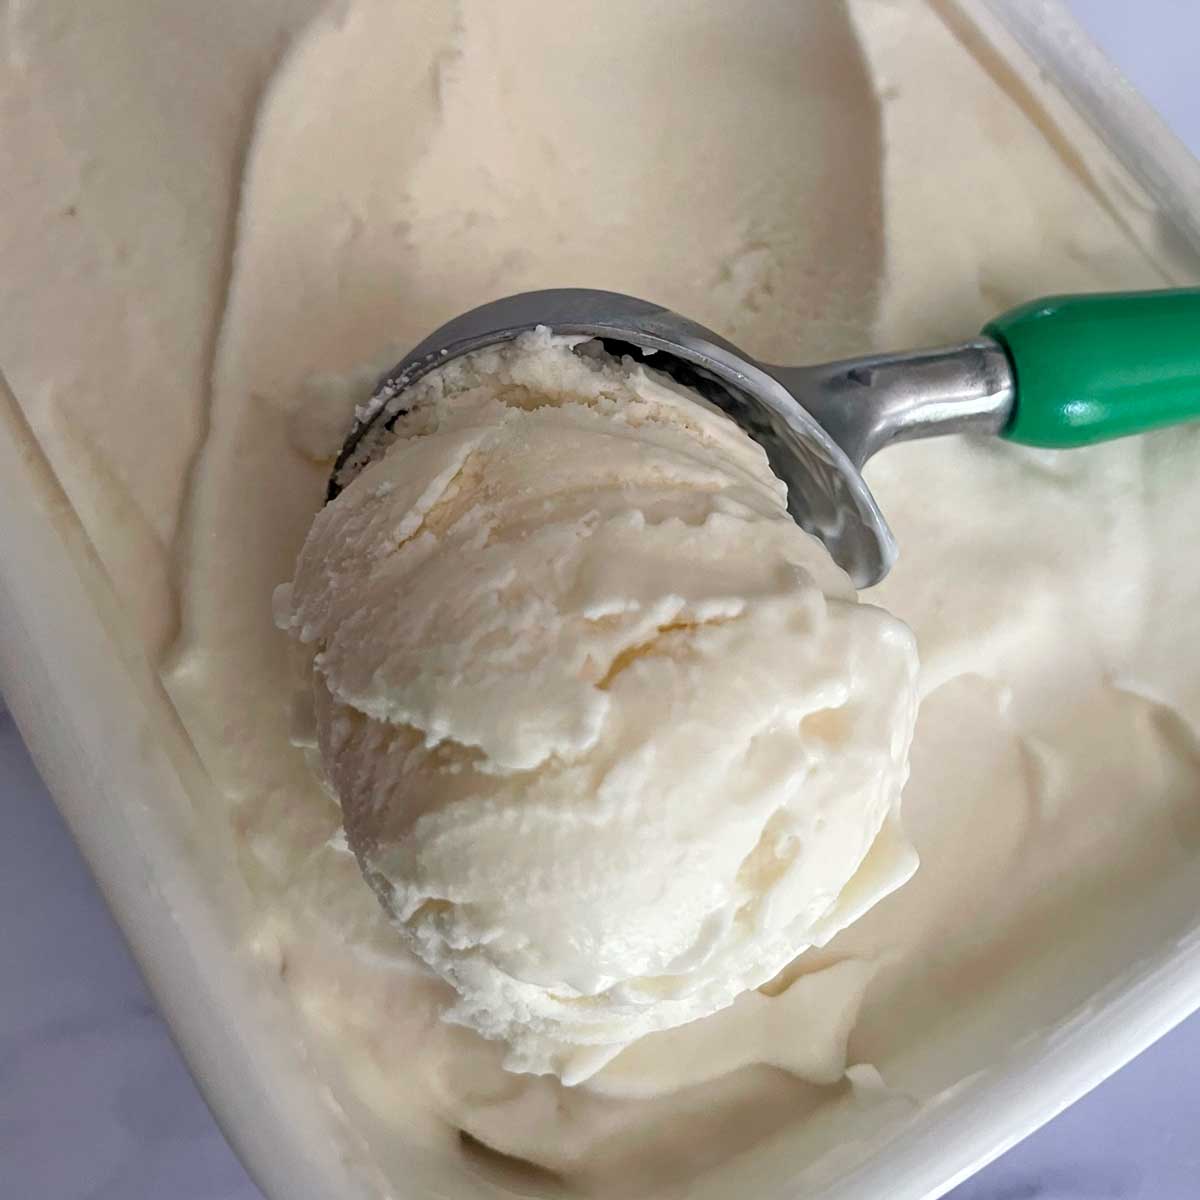 Frozen Yogurt scoop in a the frozen container.